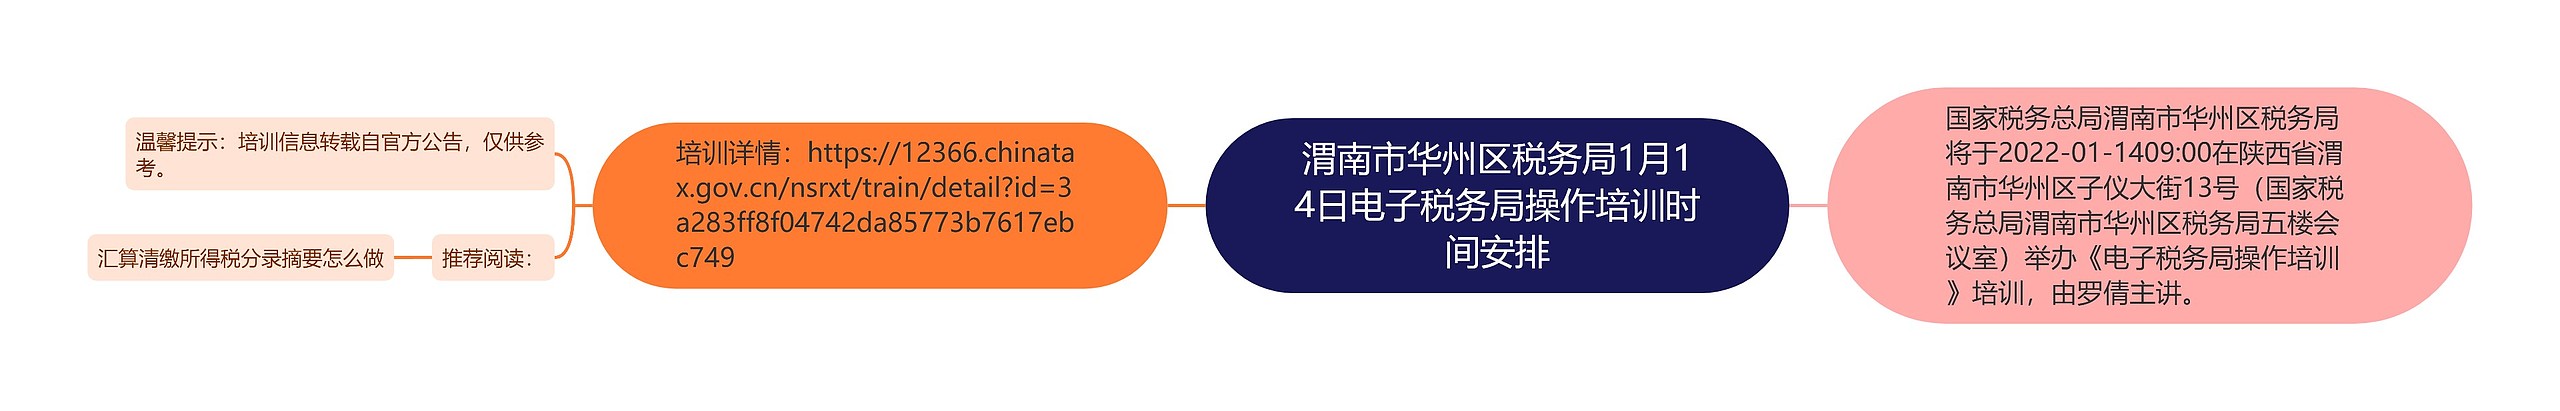 渭南市华州区税务局1月14日电子税务局操作培训时间安排